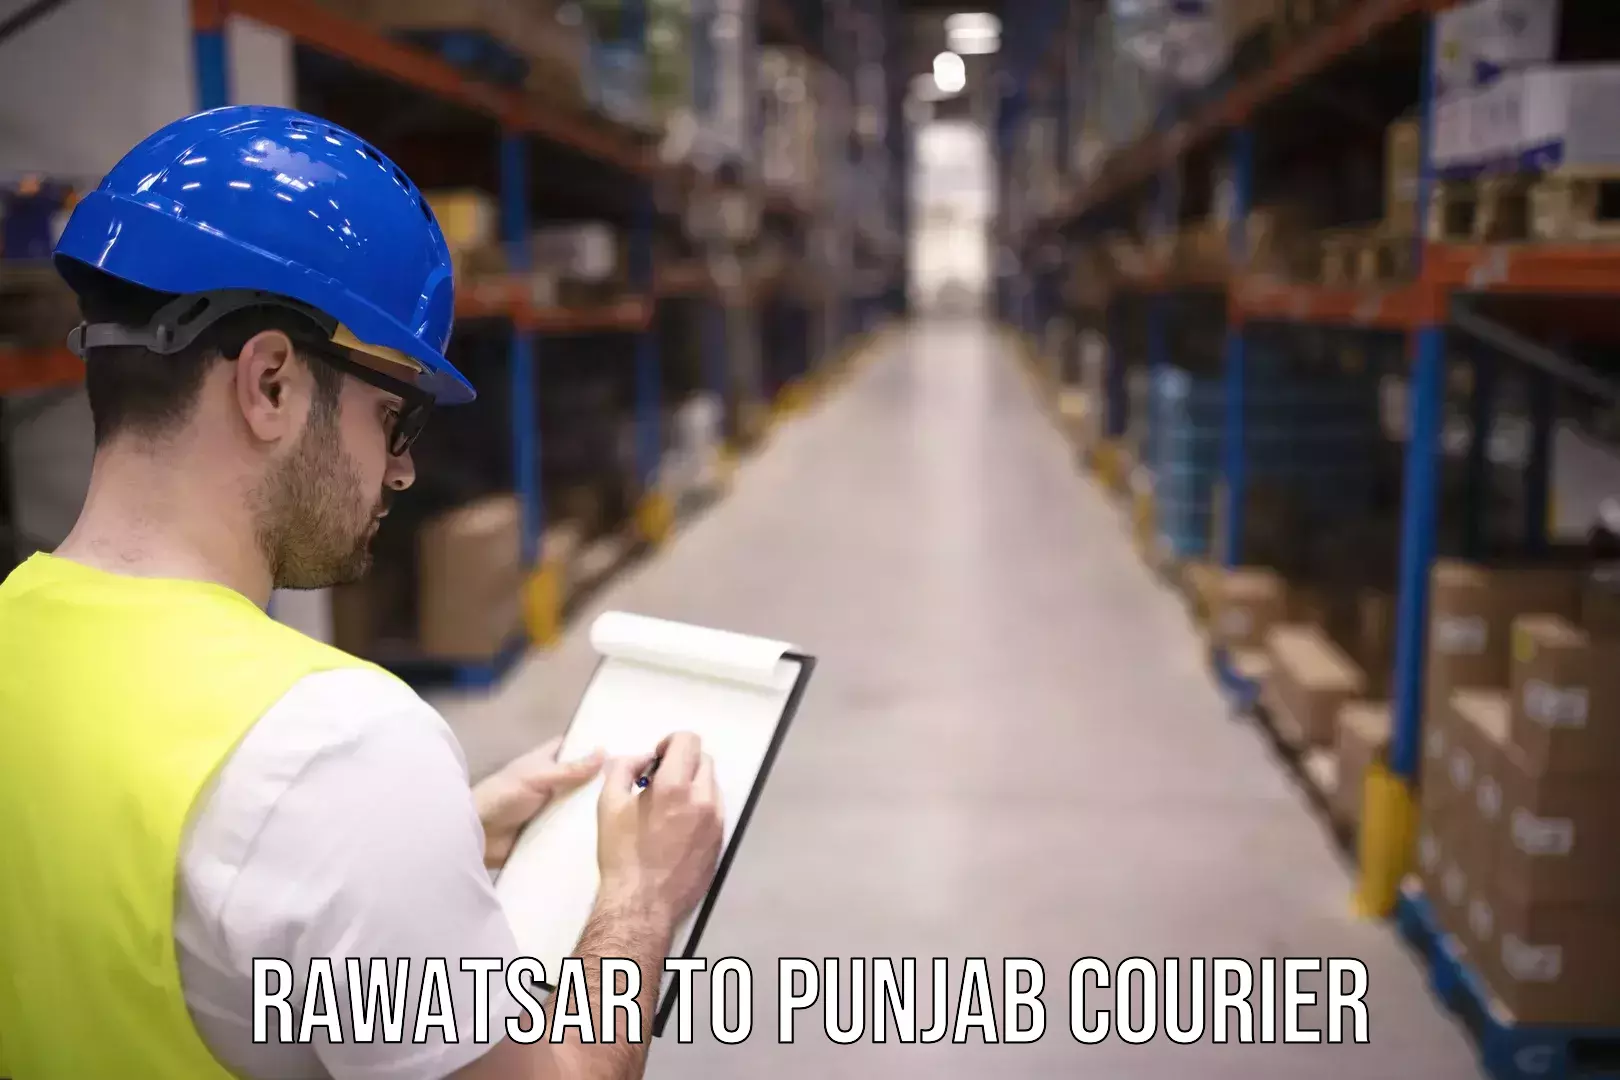 Courier membership in Rawatsar to Punjab